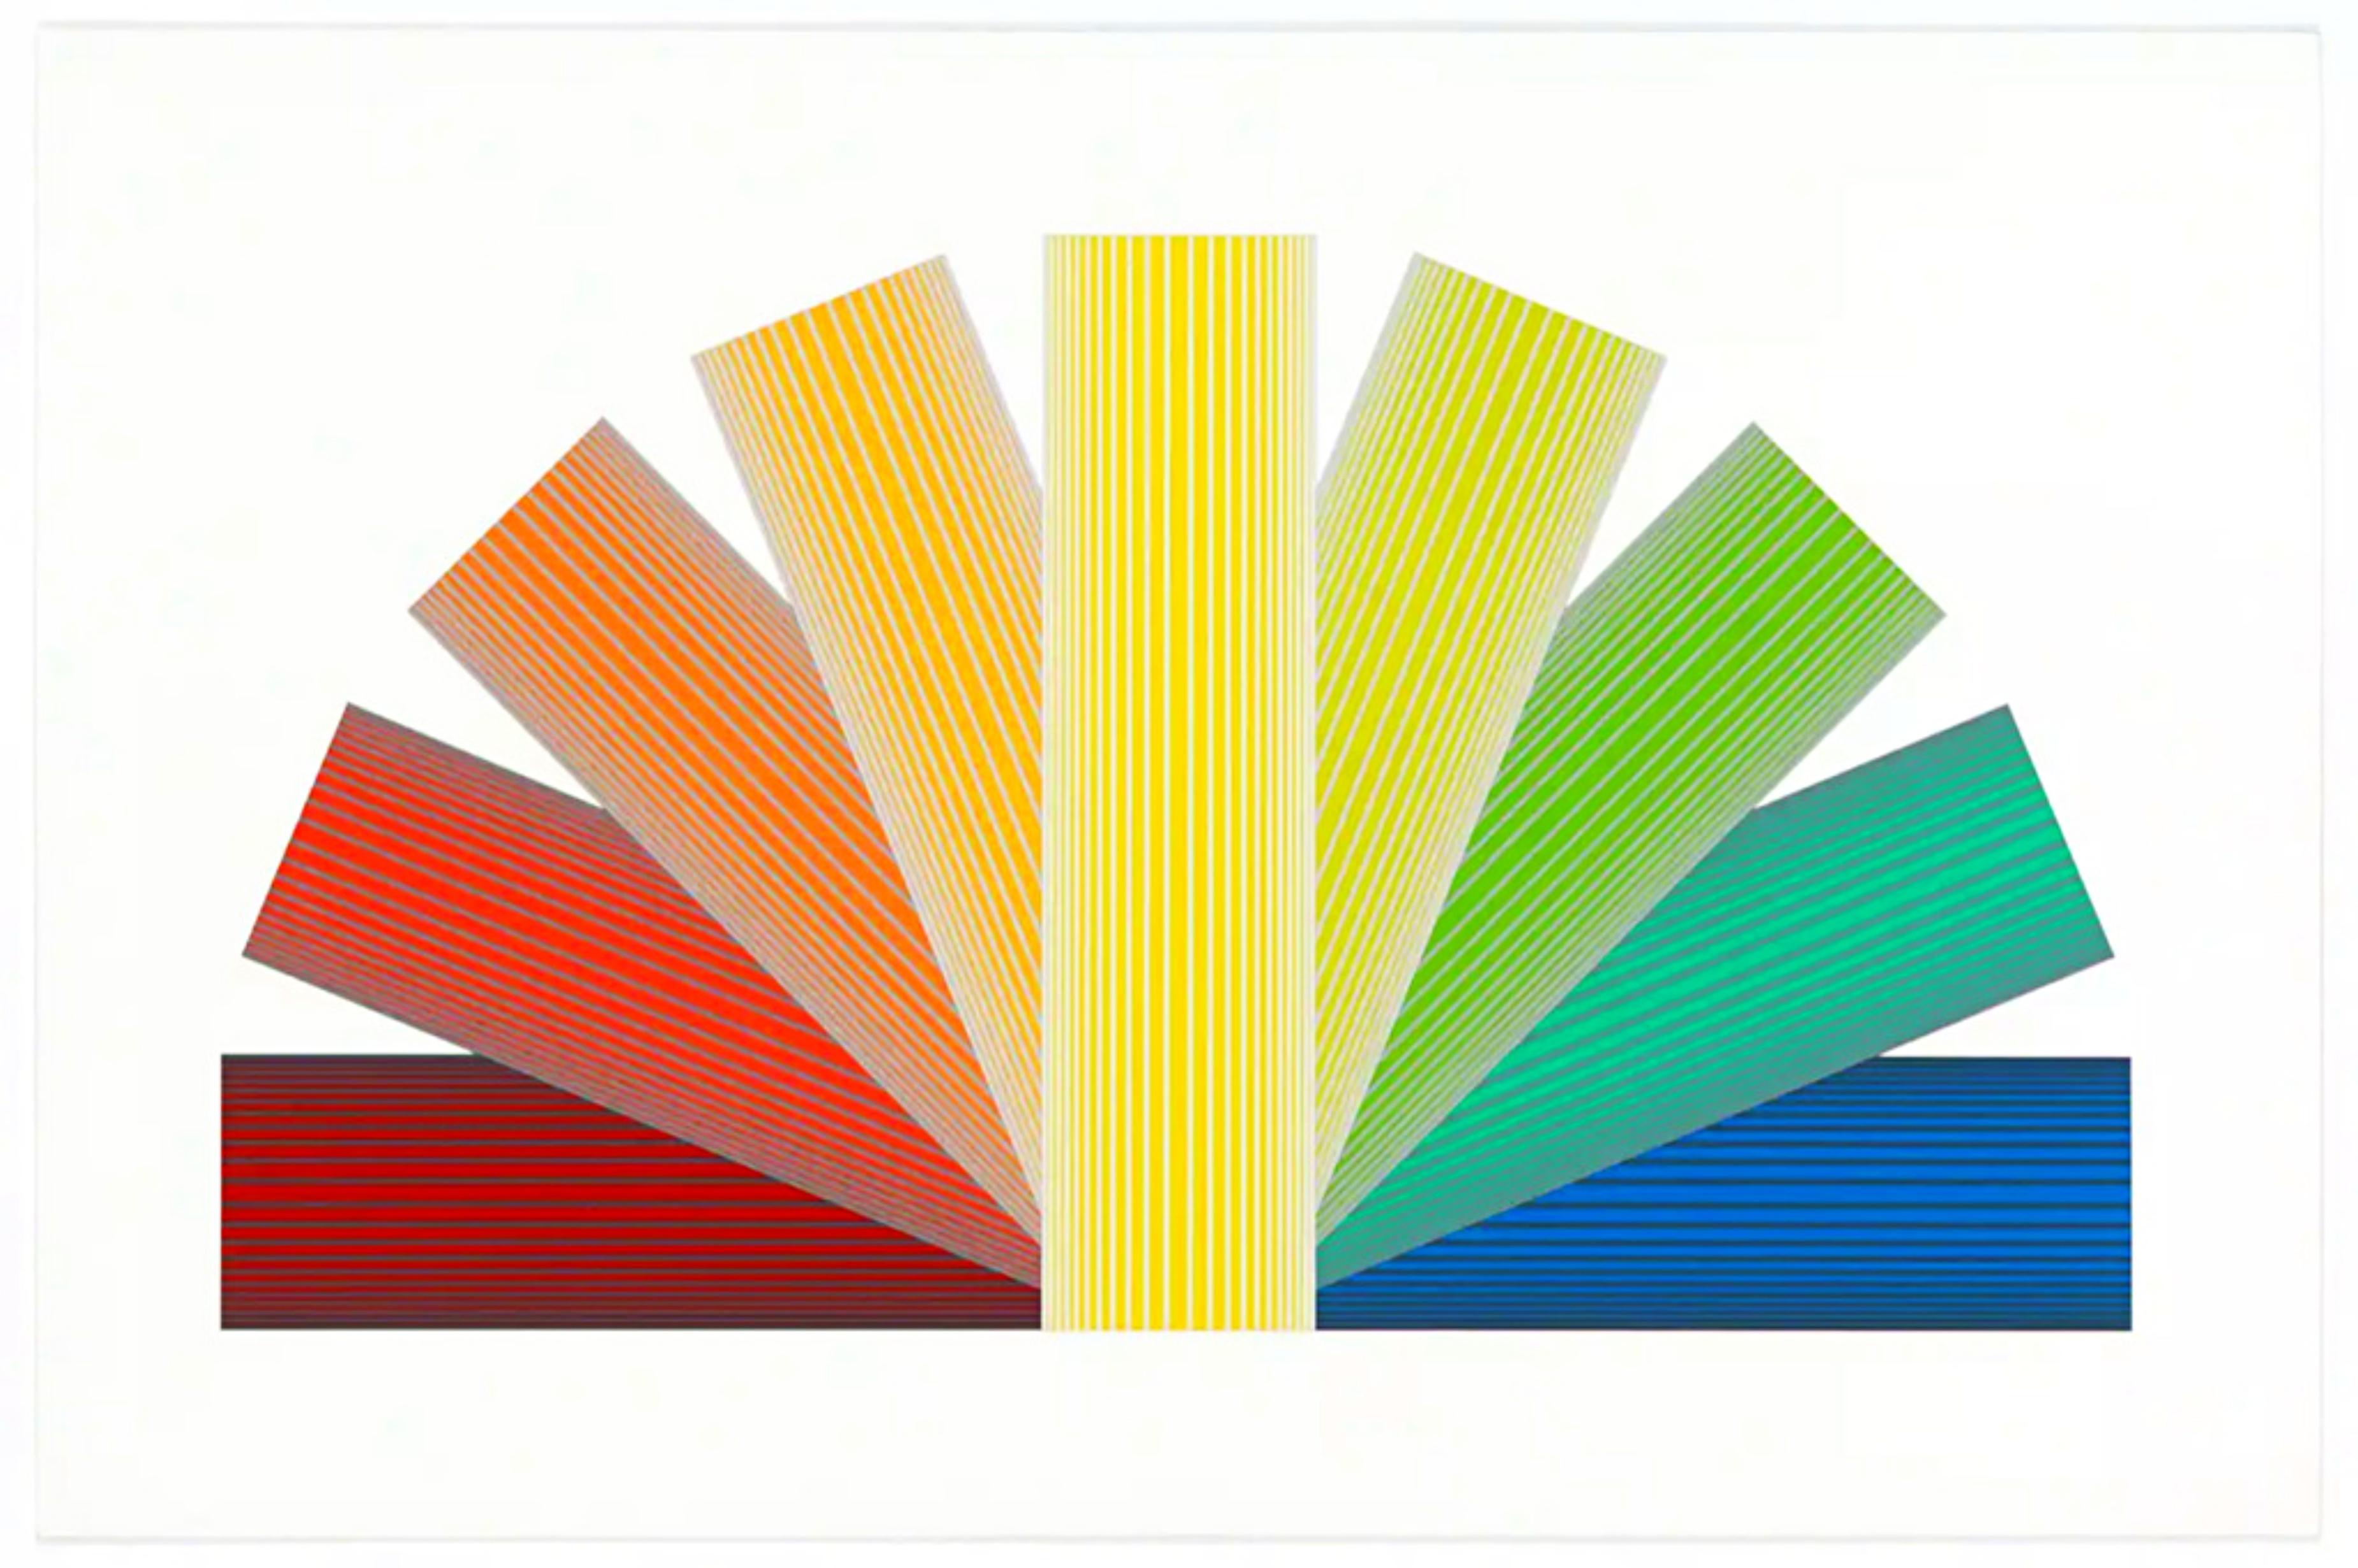 RICHARD ANUSZKIEWICZ
Grau gefärbter Regenbogen, 1992
Assemblage mit 14 Farbserigrafien und Lithografien
Auflage von 40 Stück
Auf der Vorderseite mit Bleistift signiert und nummeriert 11/40
Inklusive Rahmen: elegant gerahmt in einem